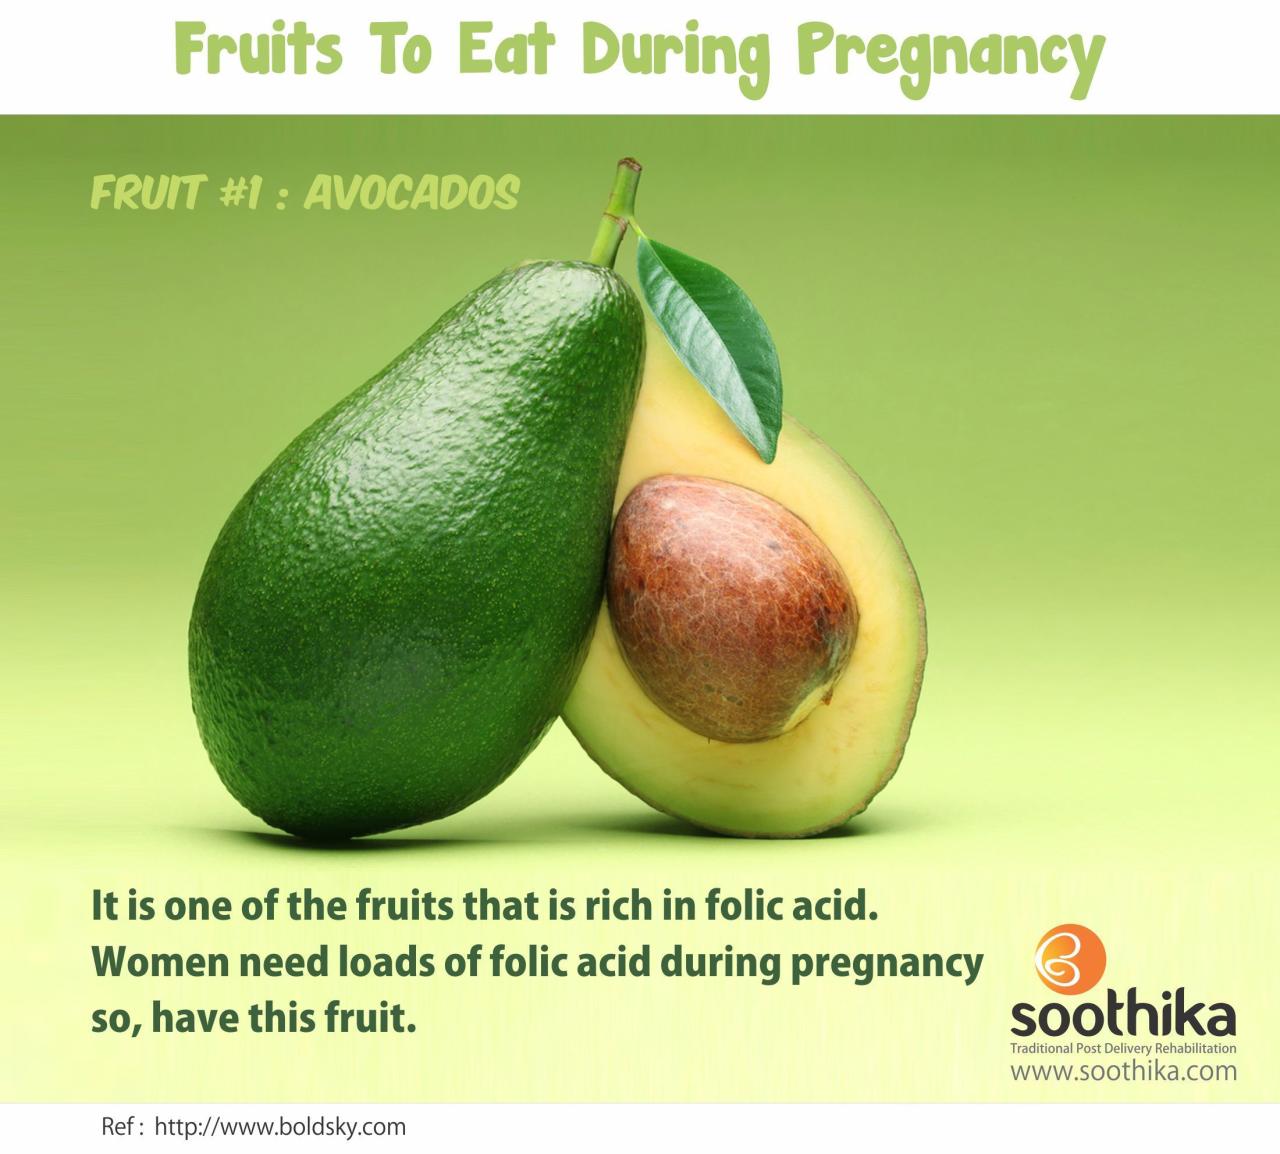 Avocado nutritional celery arthritis